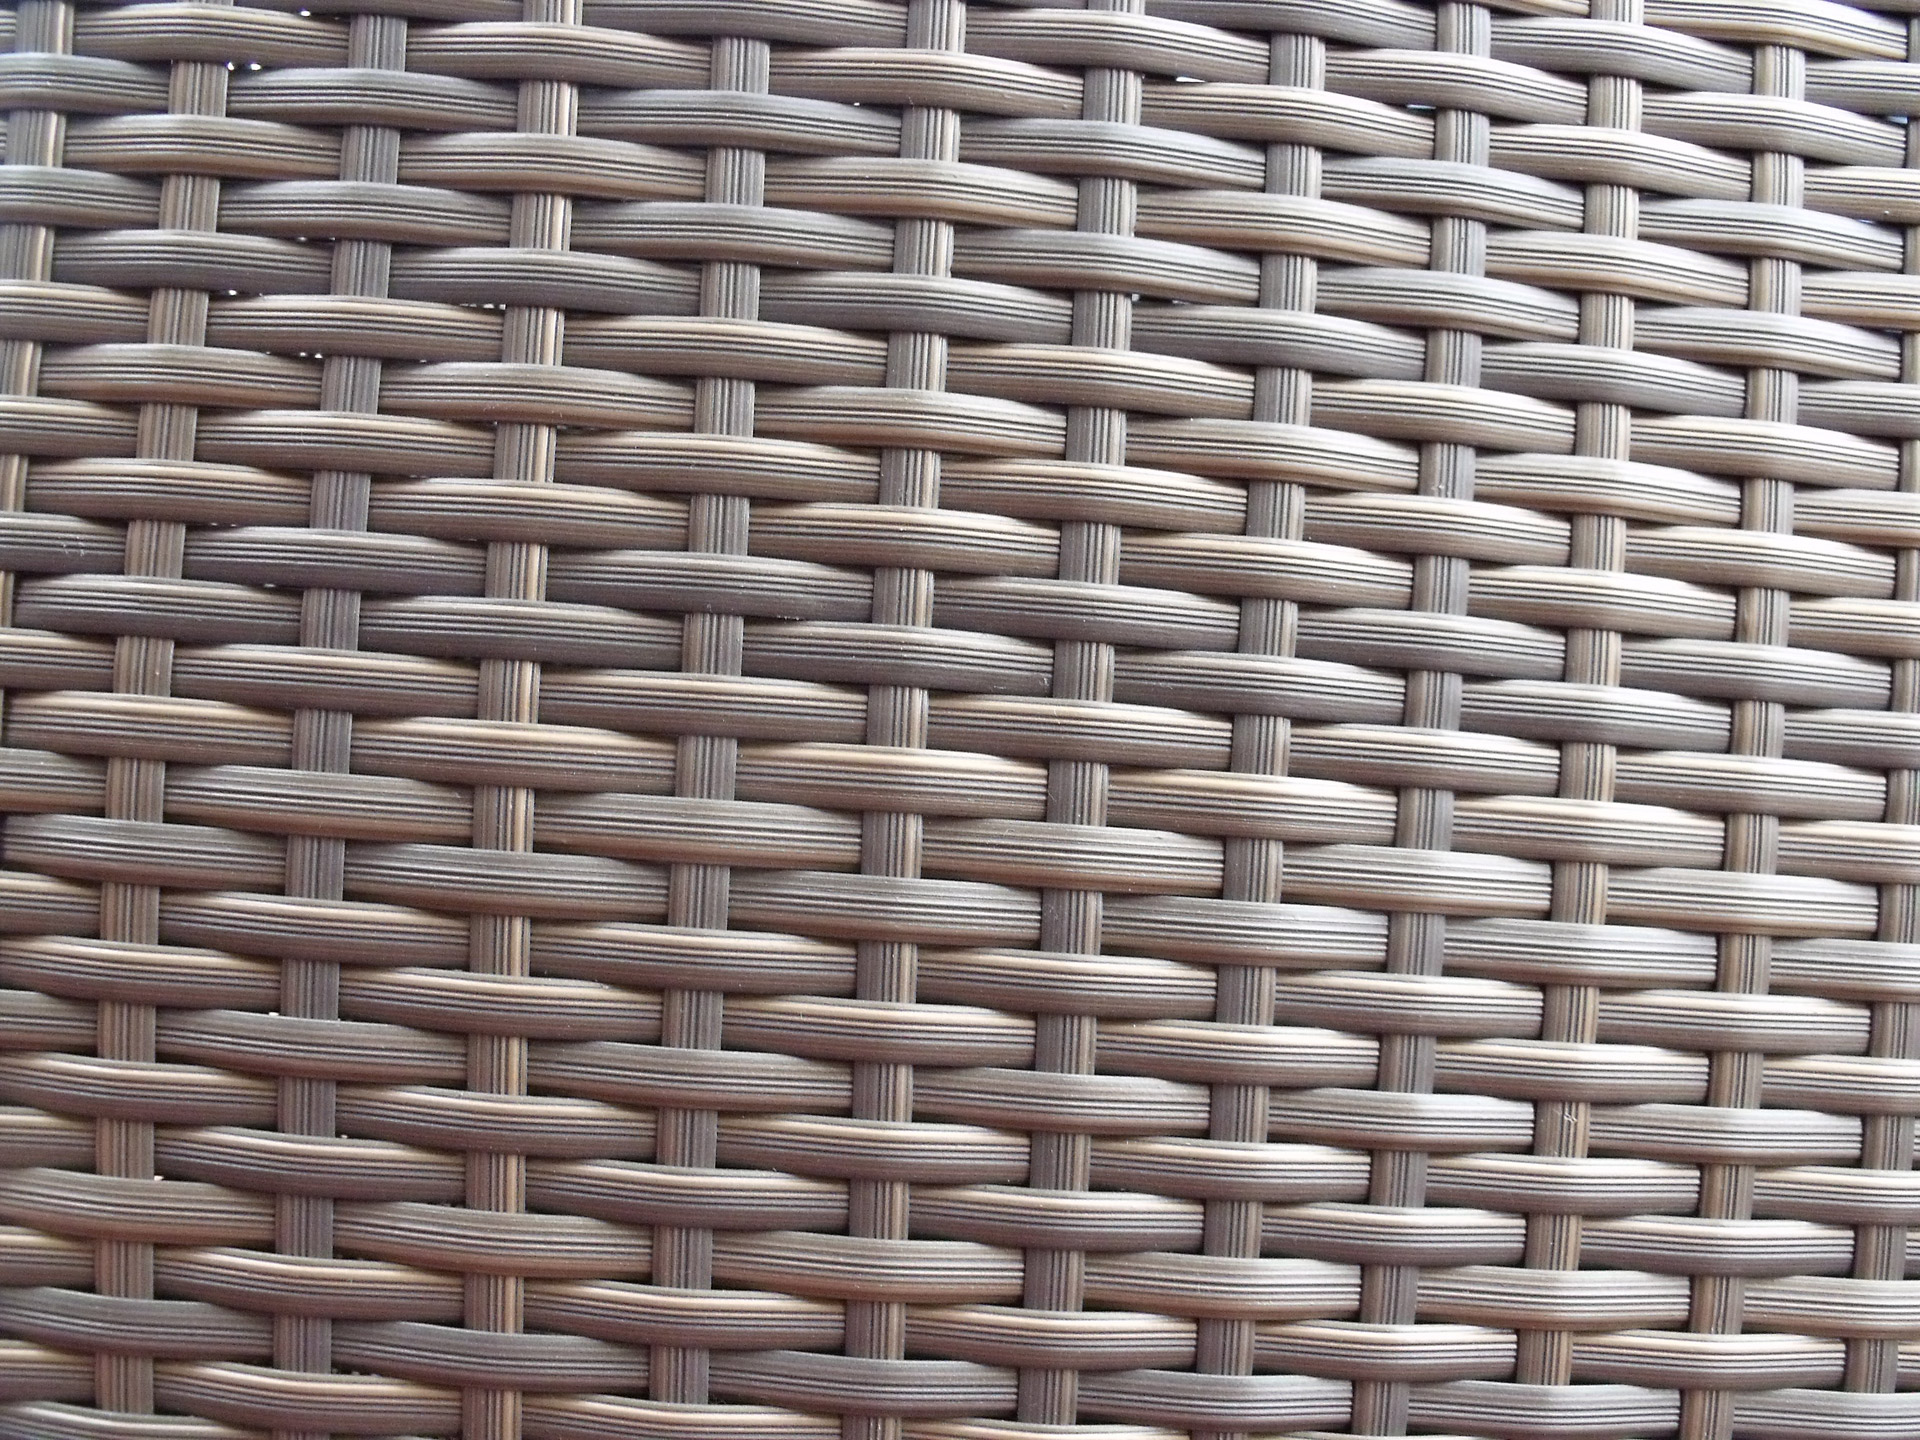 cane weave background free photo